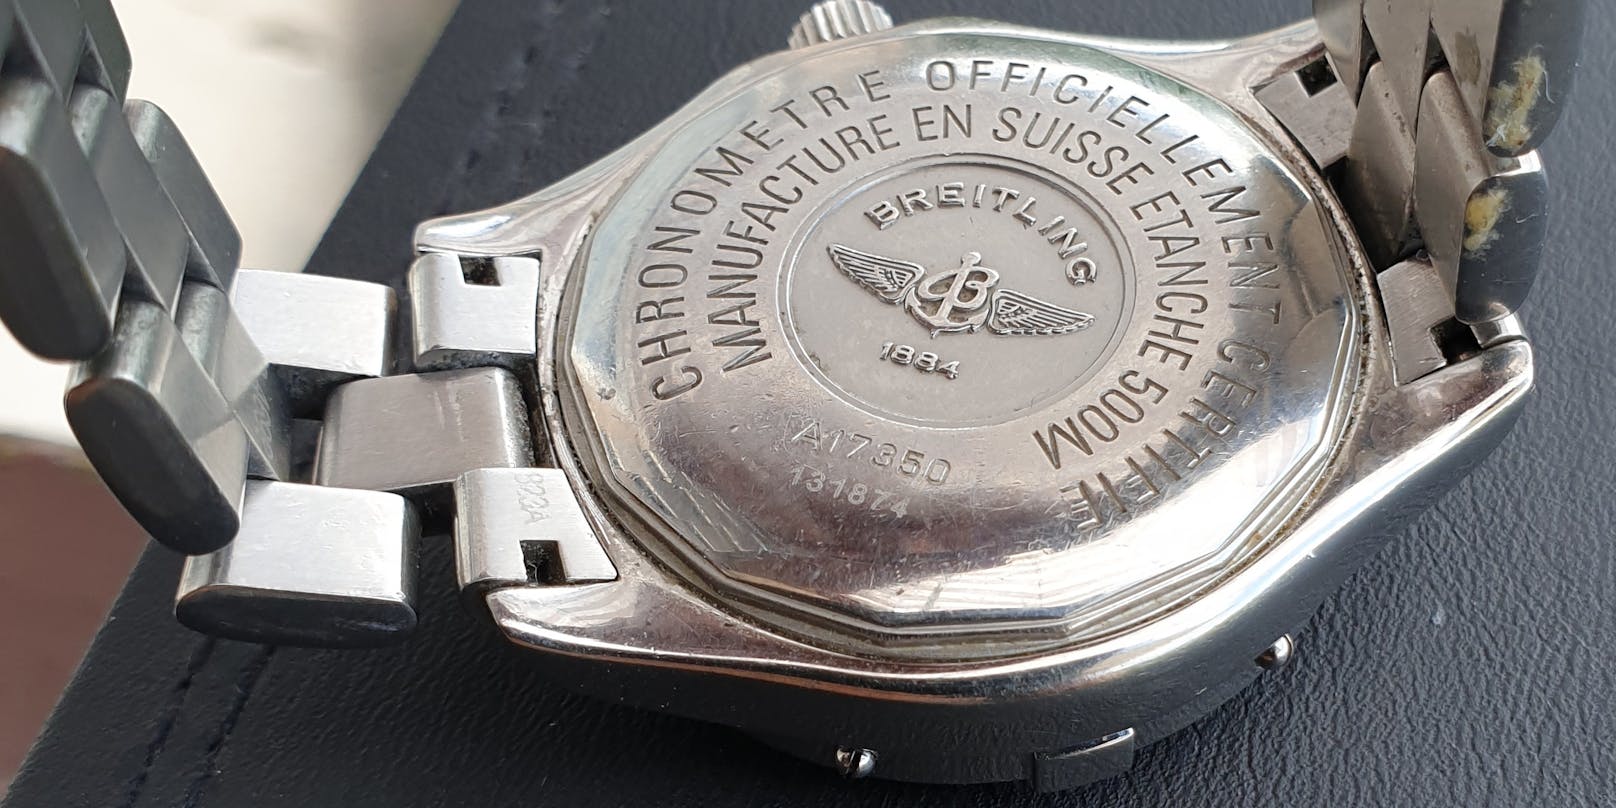 Die Betrüger ergaunerten die Breitling. Die Uhr wurde schon als gestohlen registriert.&nbsp;